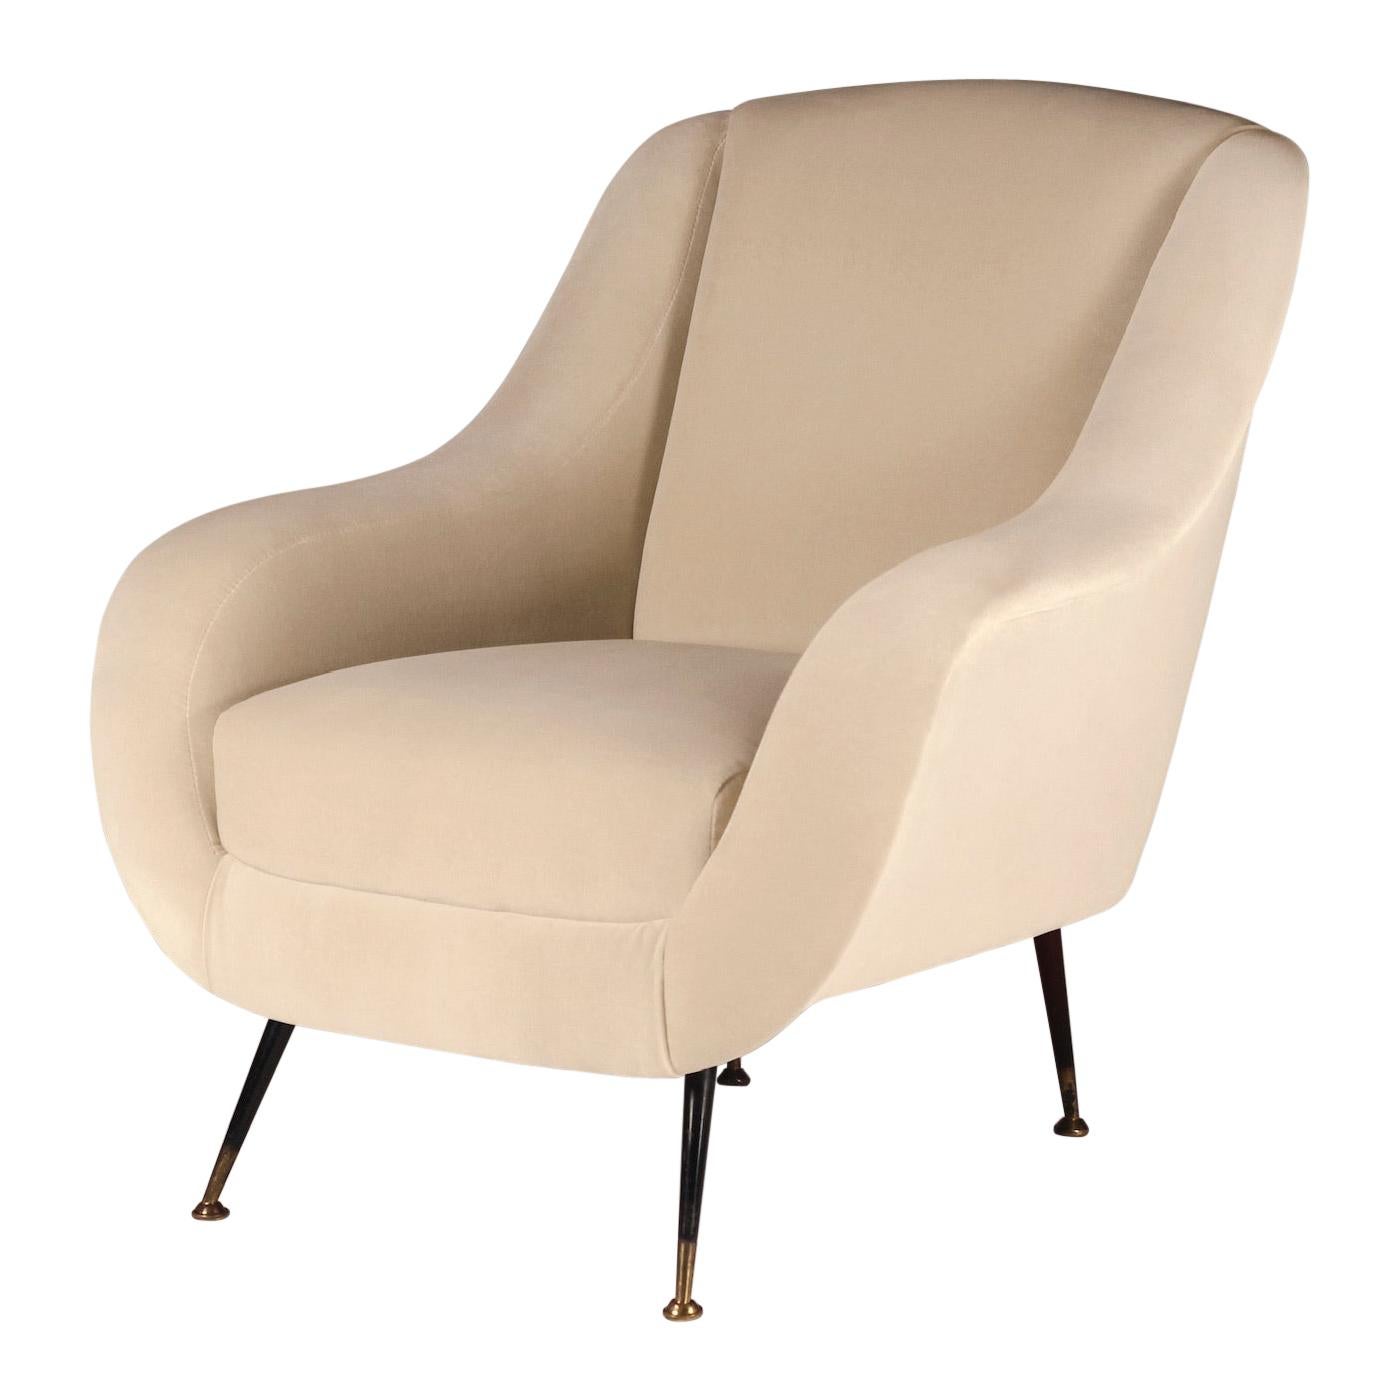 Mid-Century Modern Style Inspired Italian Lounge Chair ‘Sophia’ in Ivory Velvet